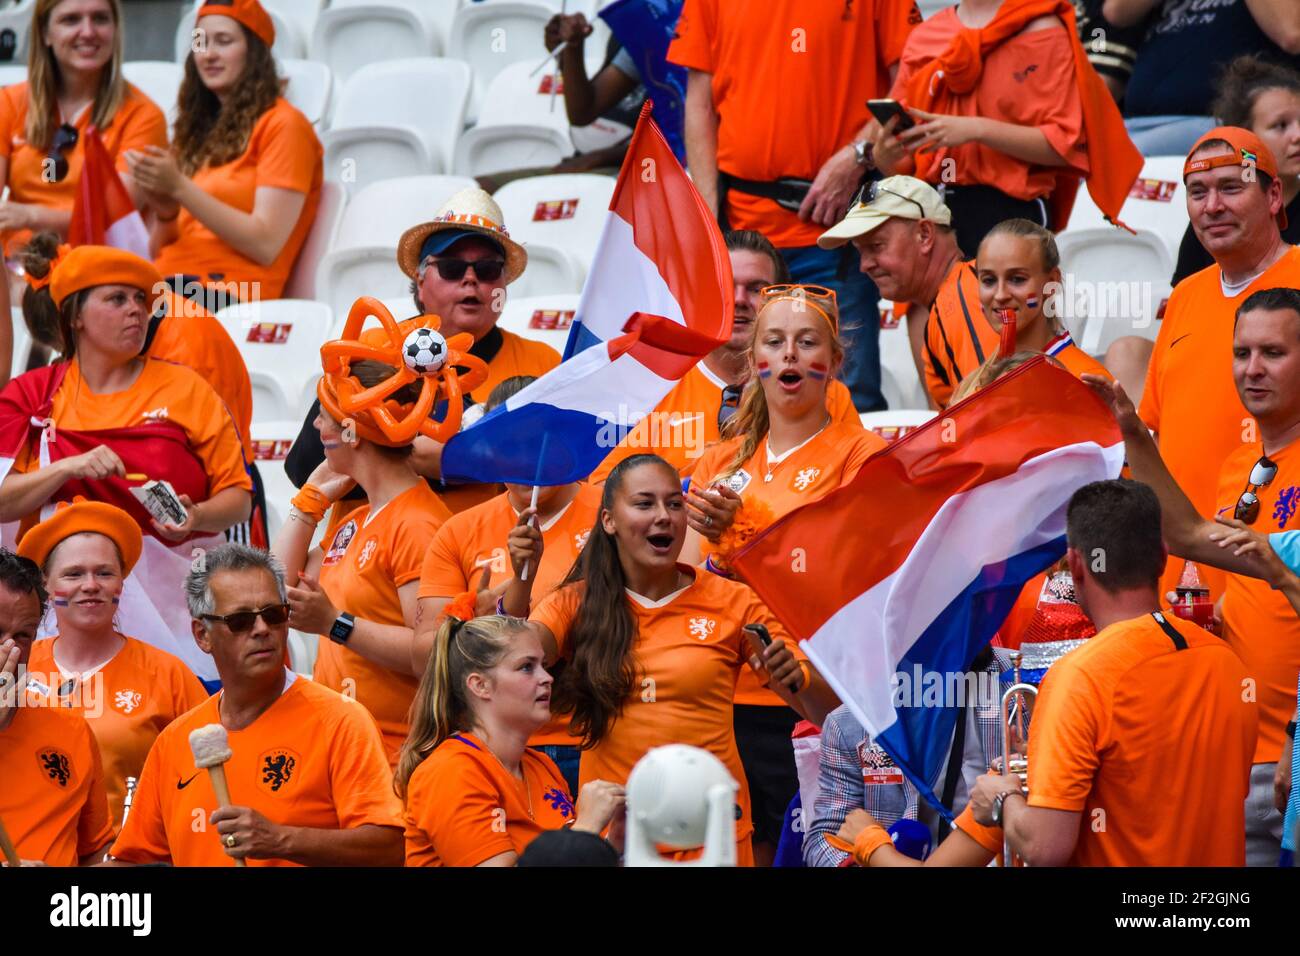 Netherlands national football team fans